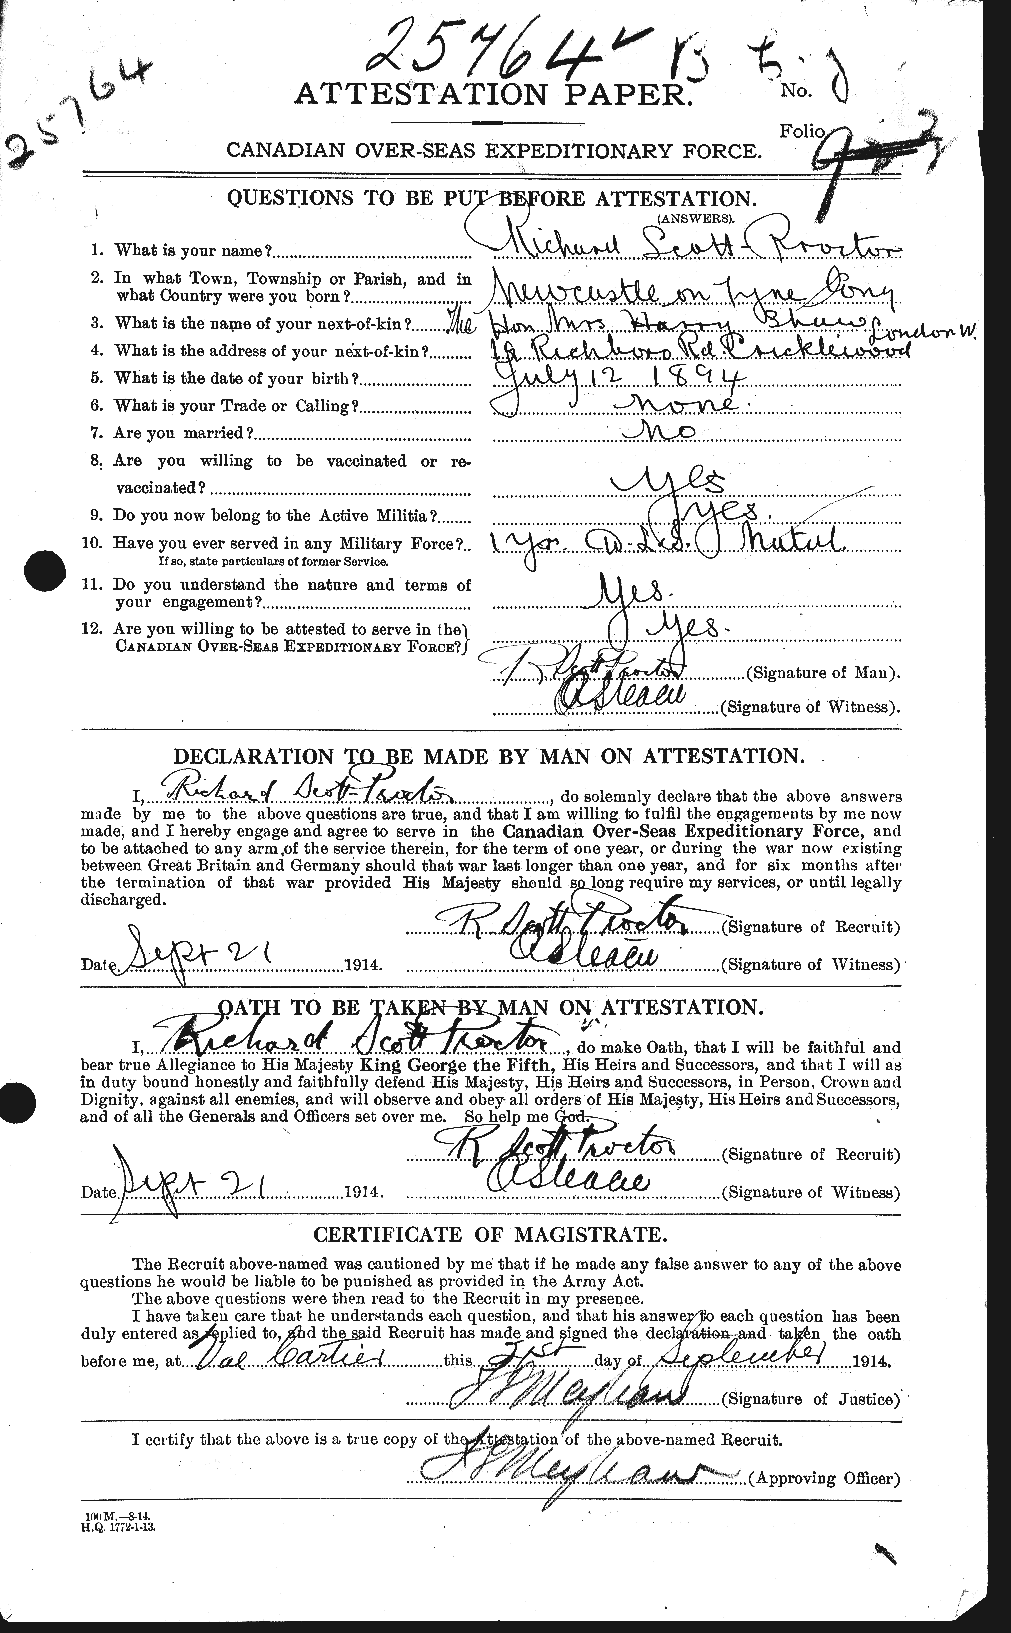 Dossiers du Personnel de la Première Guerre mondiale - CEC 087241a